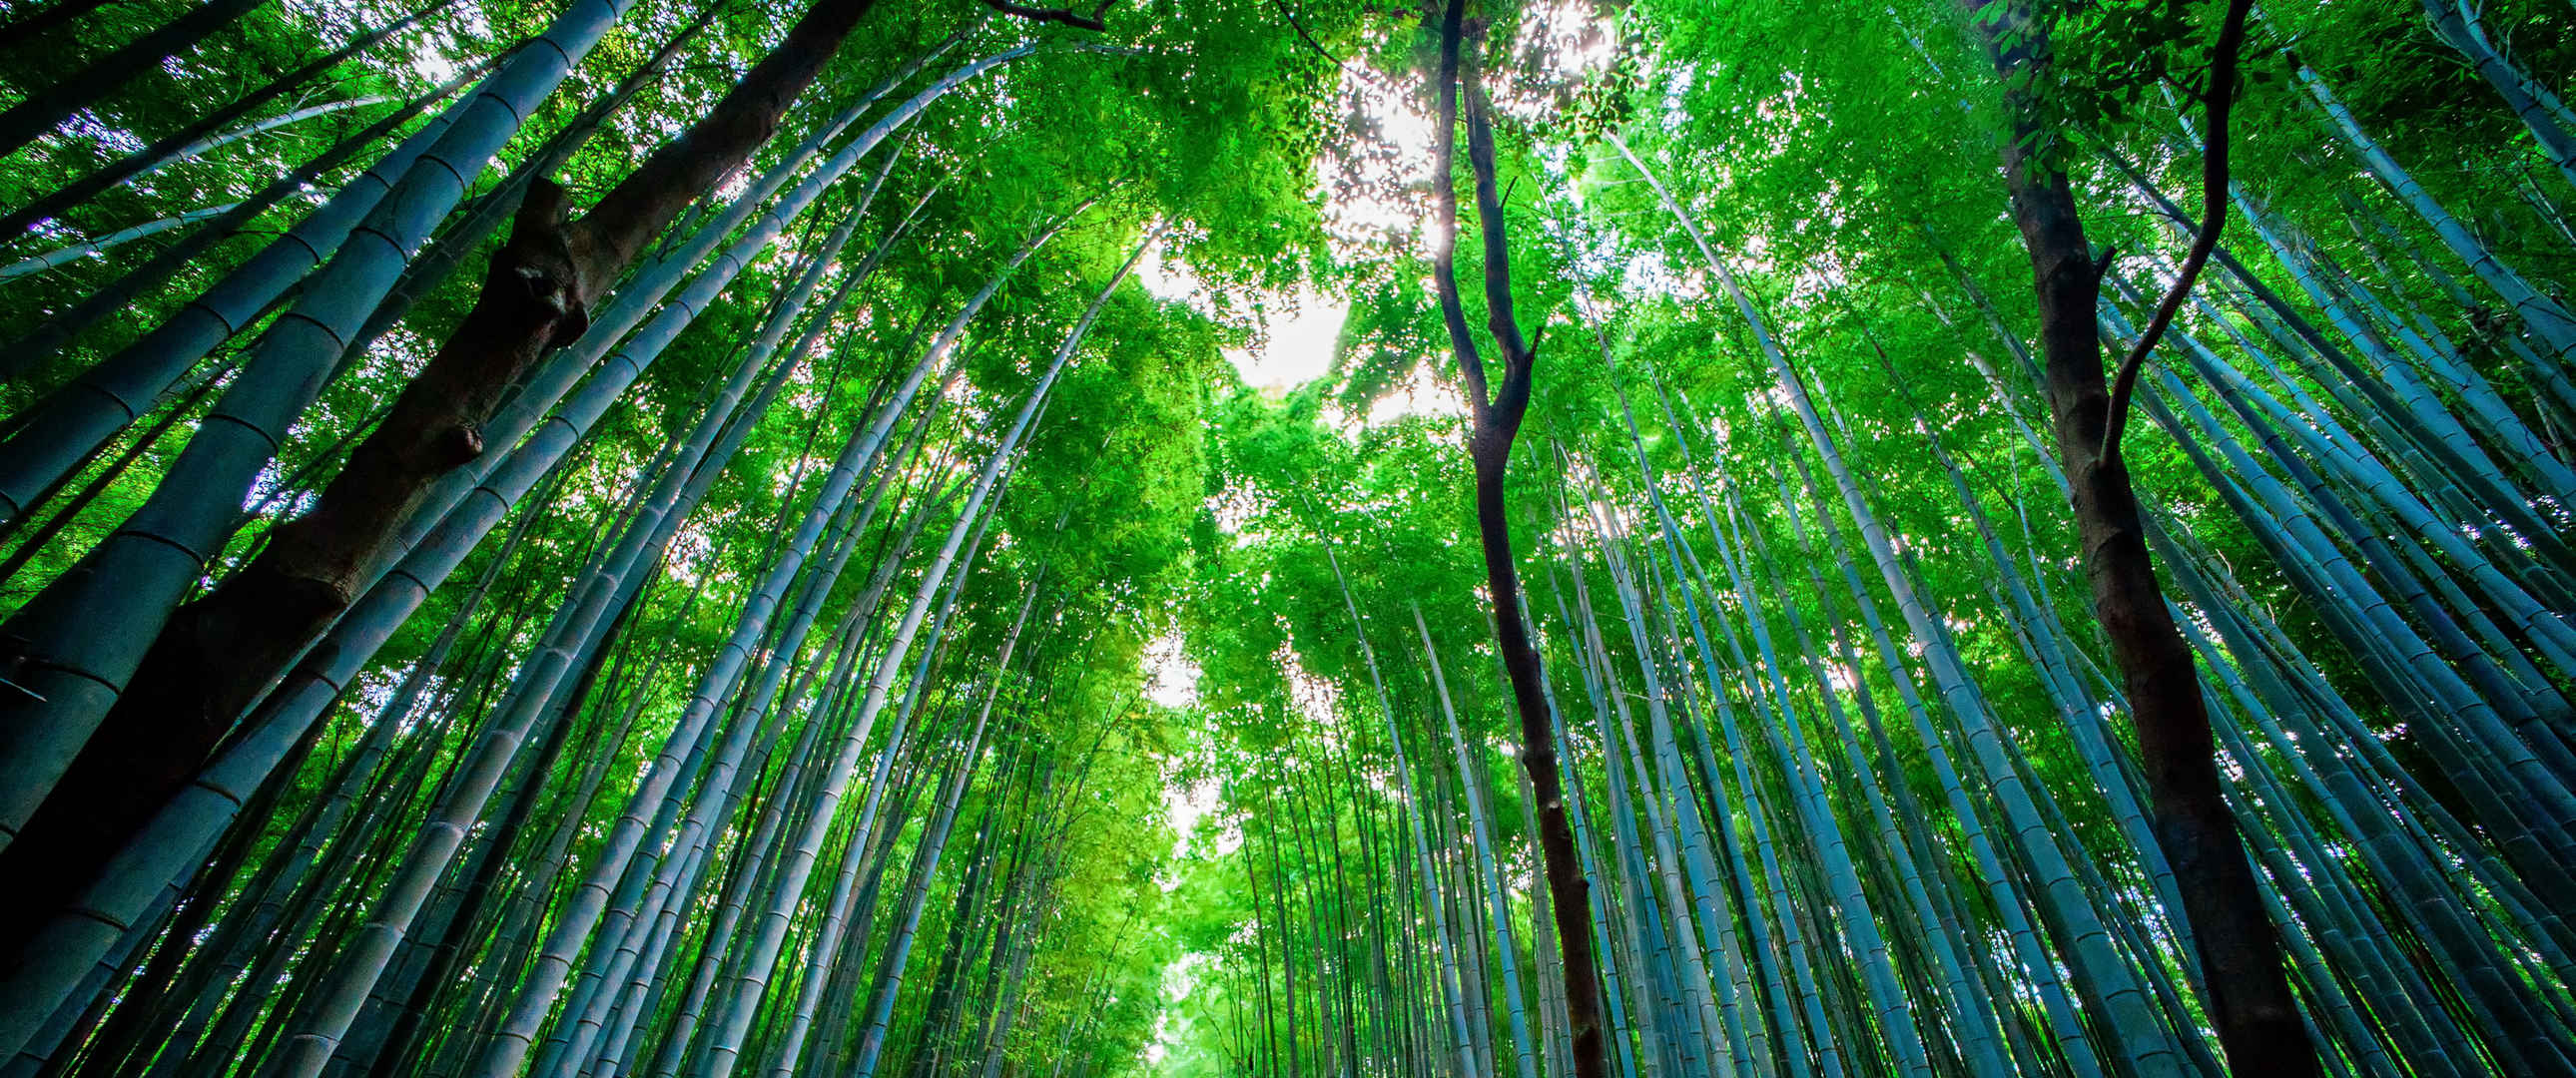 优美的竹林风景图片-